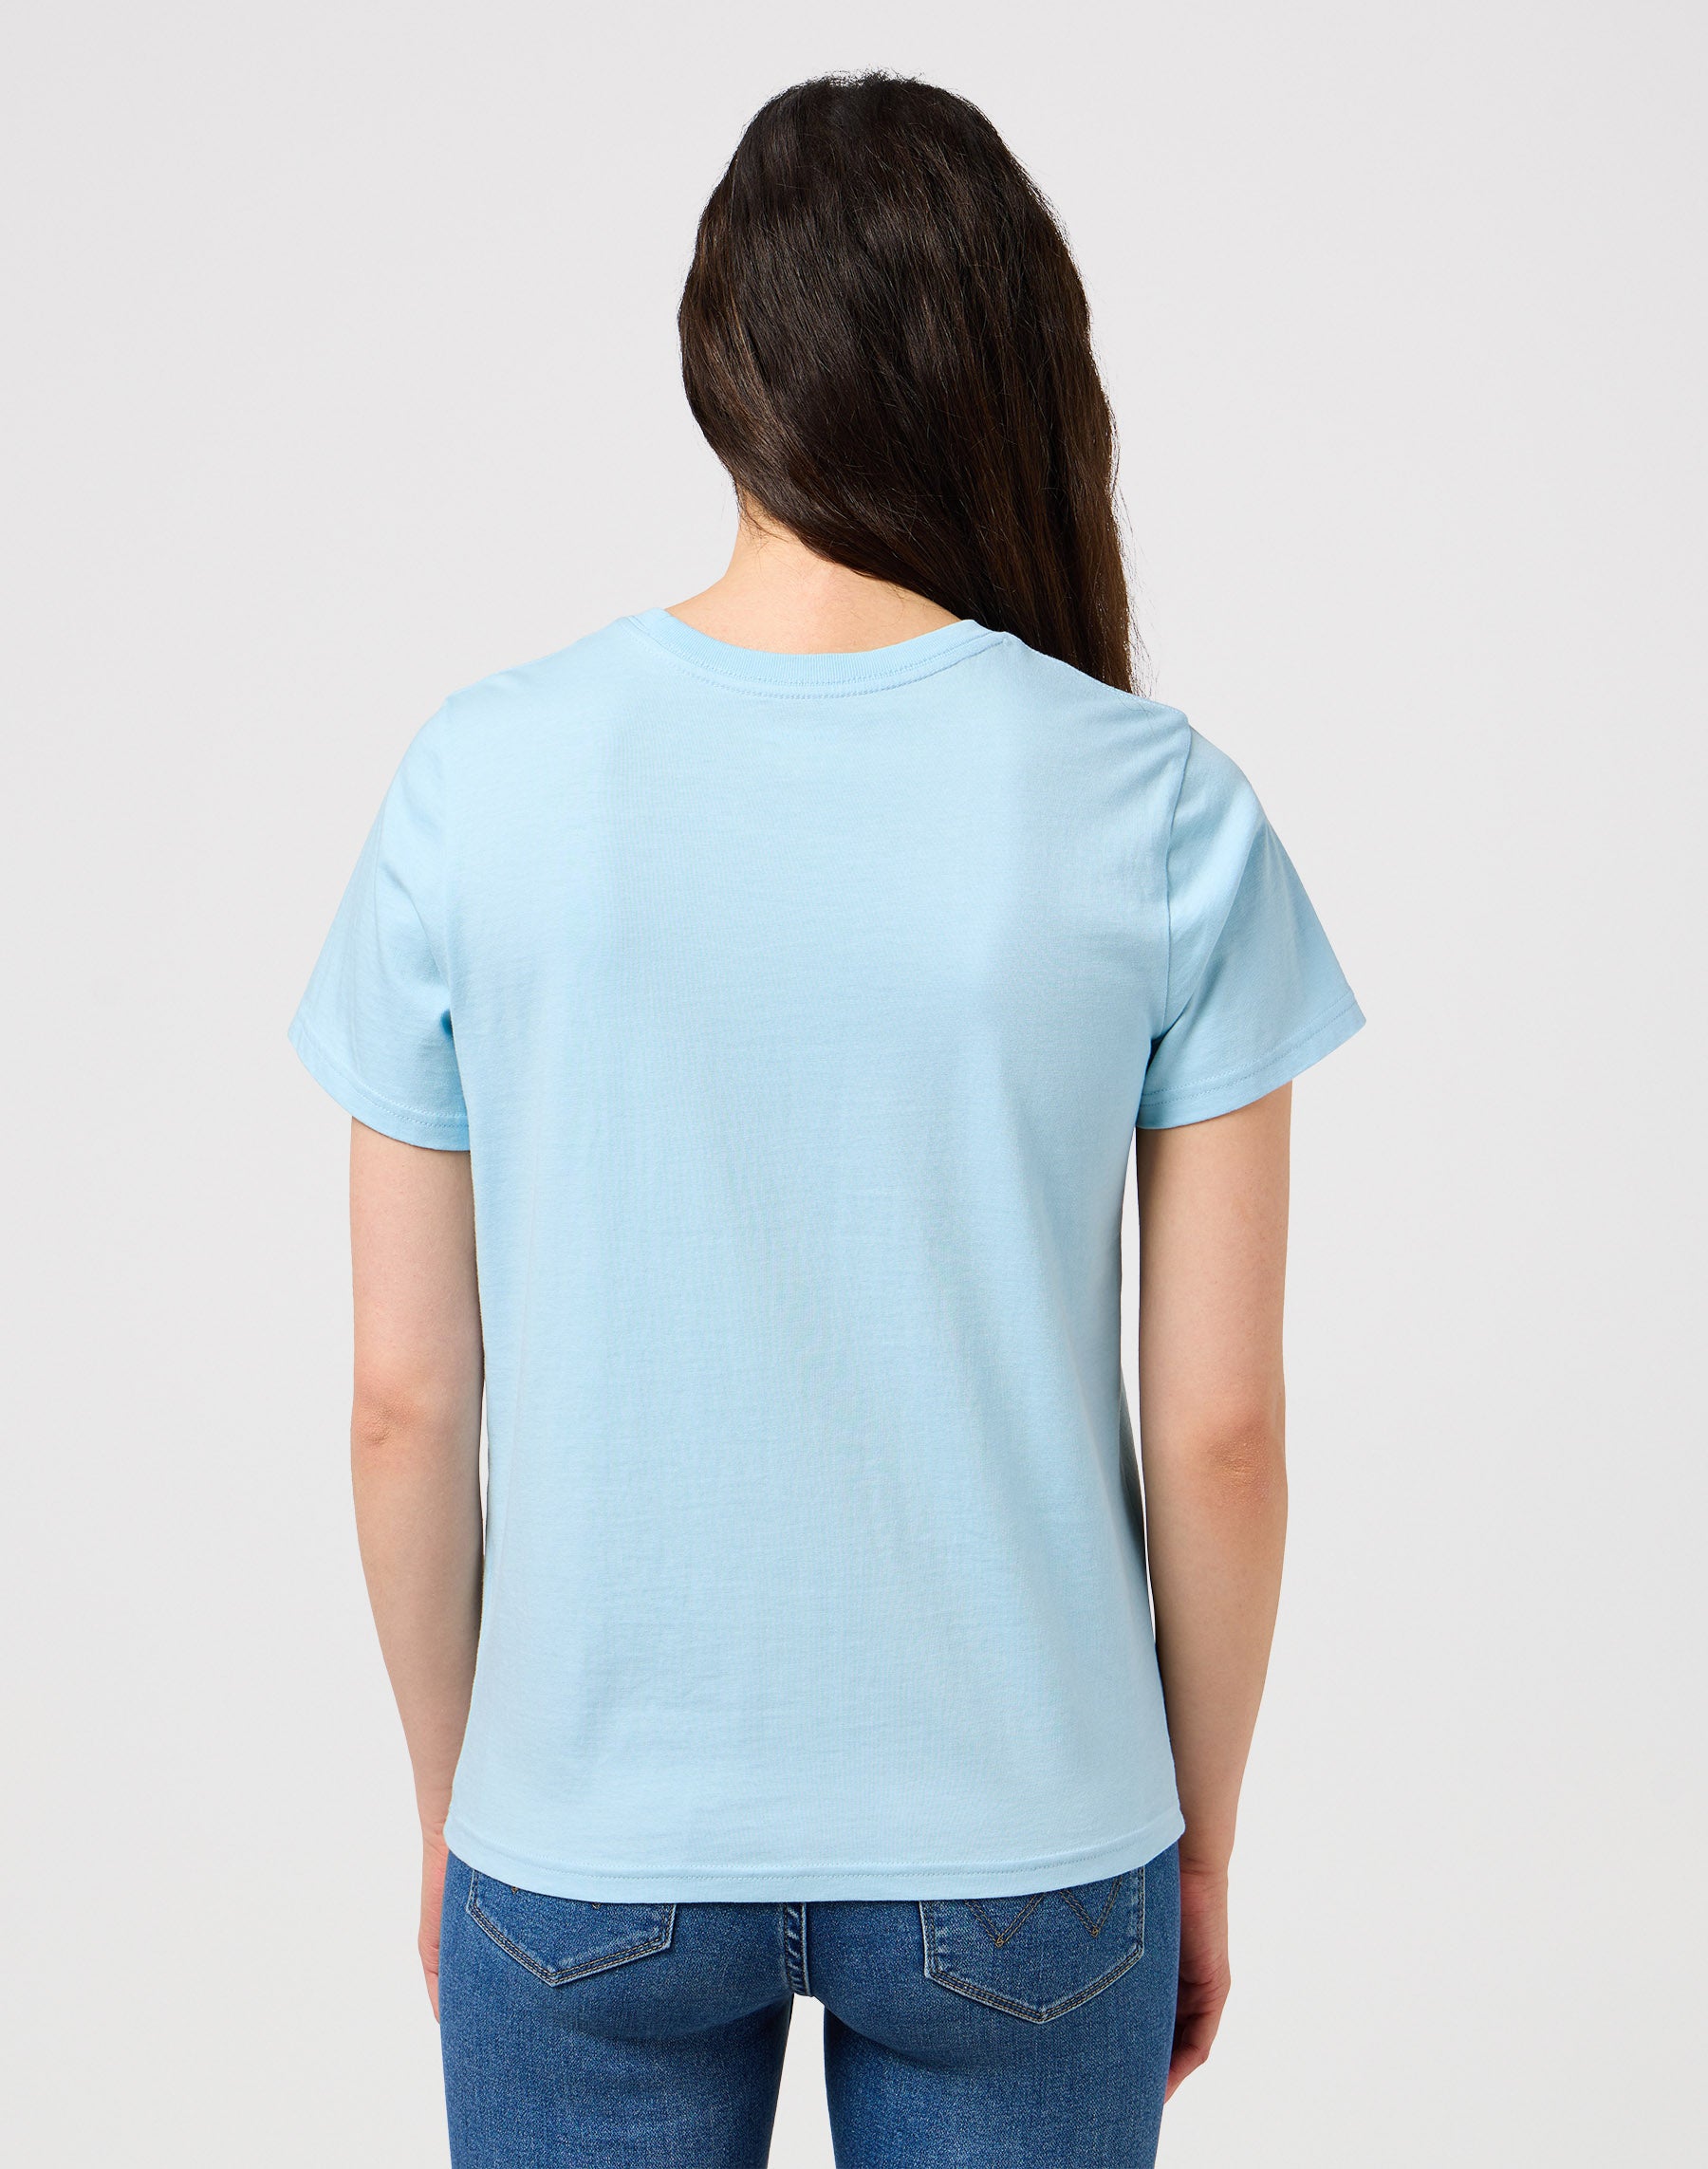 Regular Tee in Dream Blue T-Shirts Wrangler   